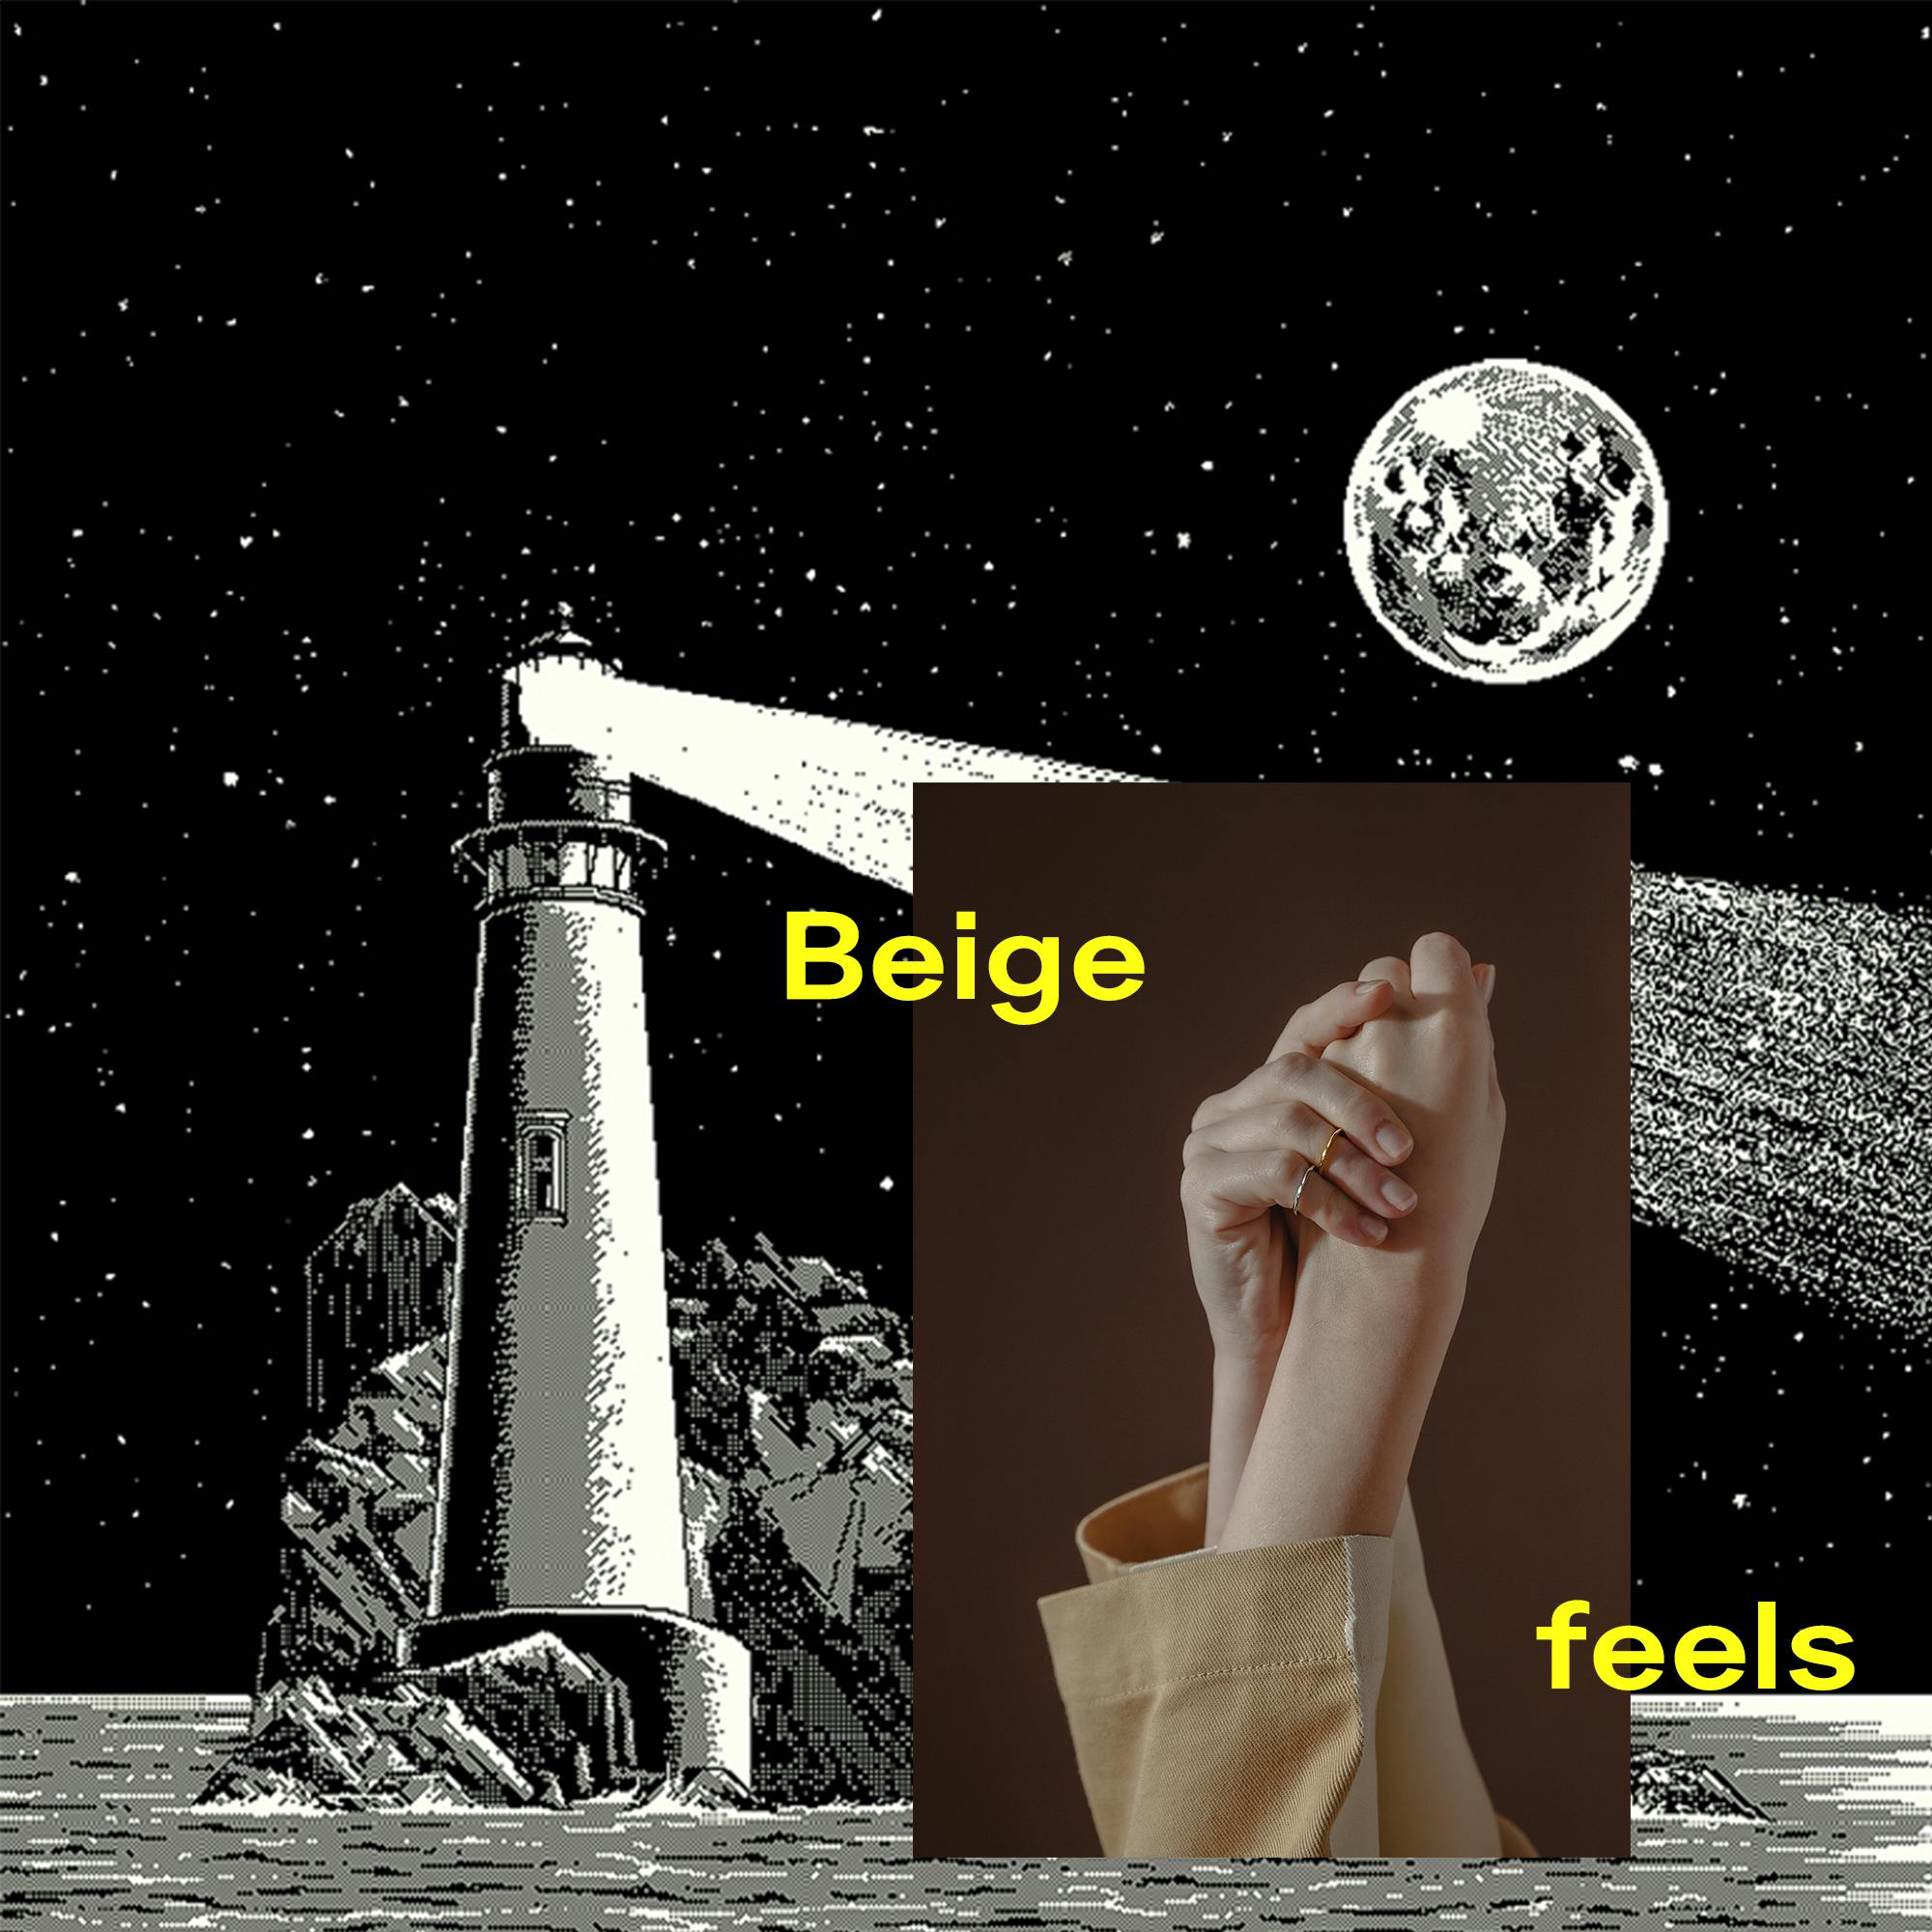 Beige feels: Bis zur Unendlichkeit ...